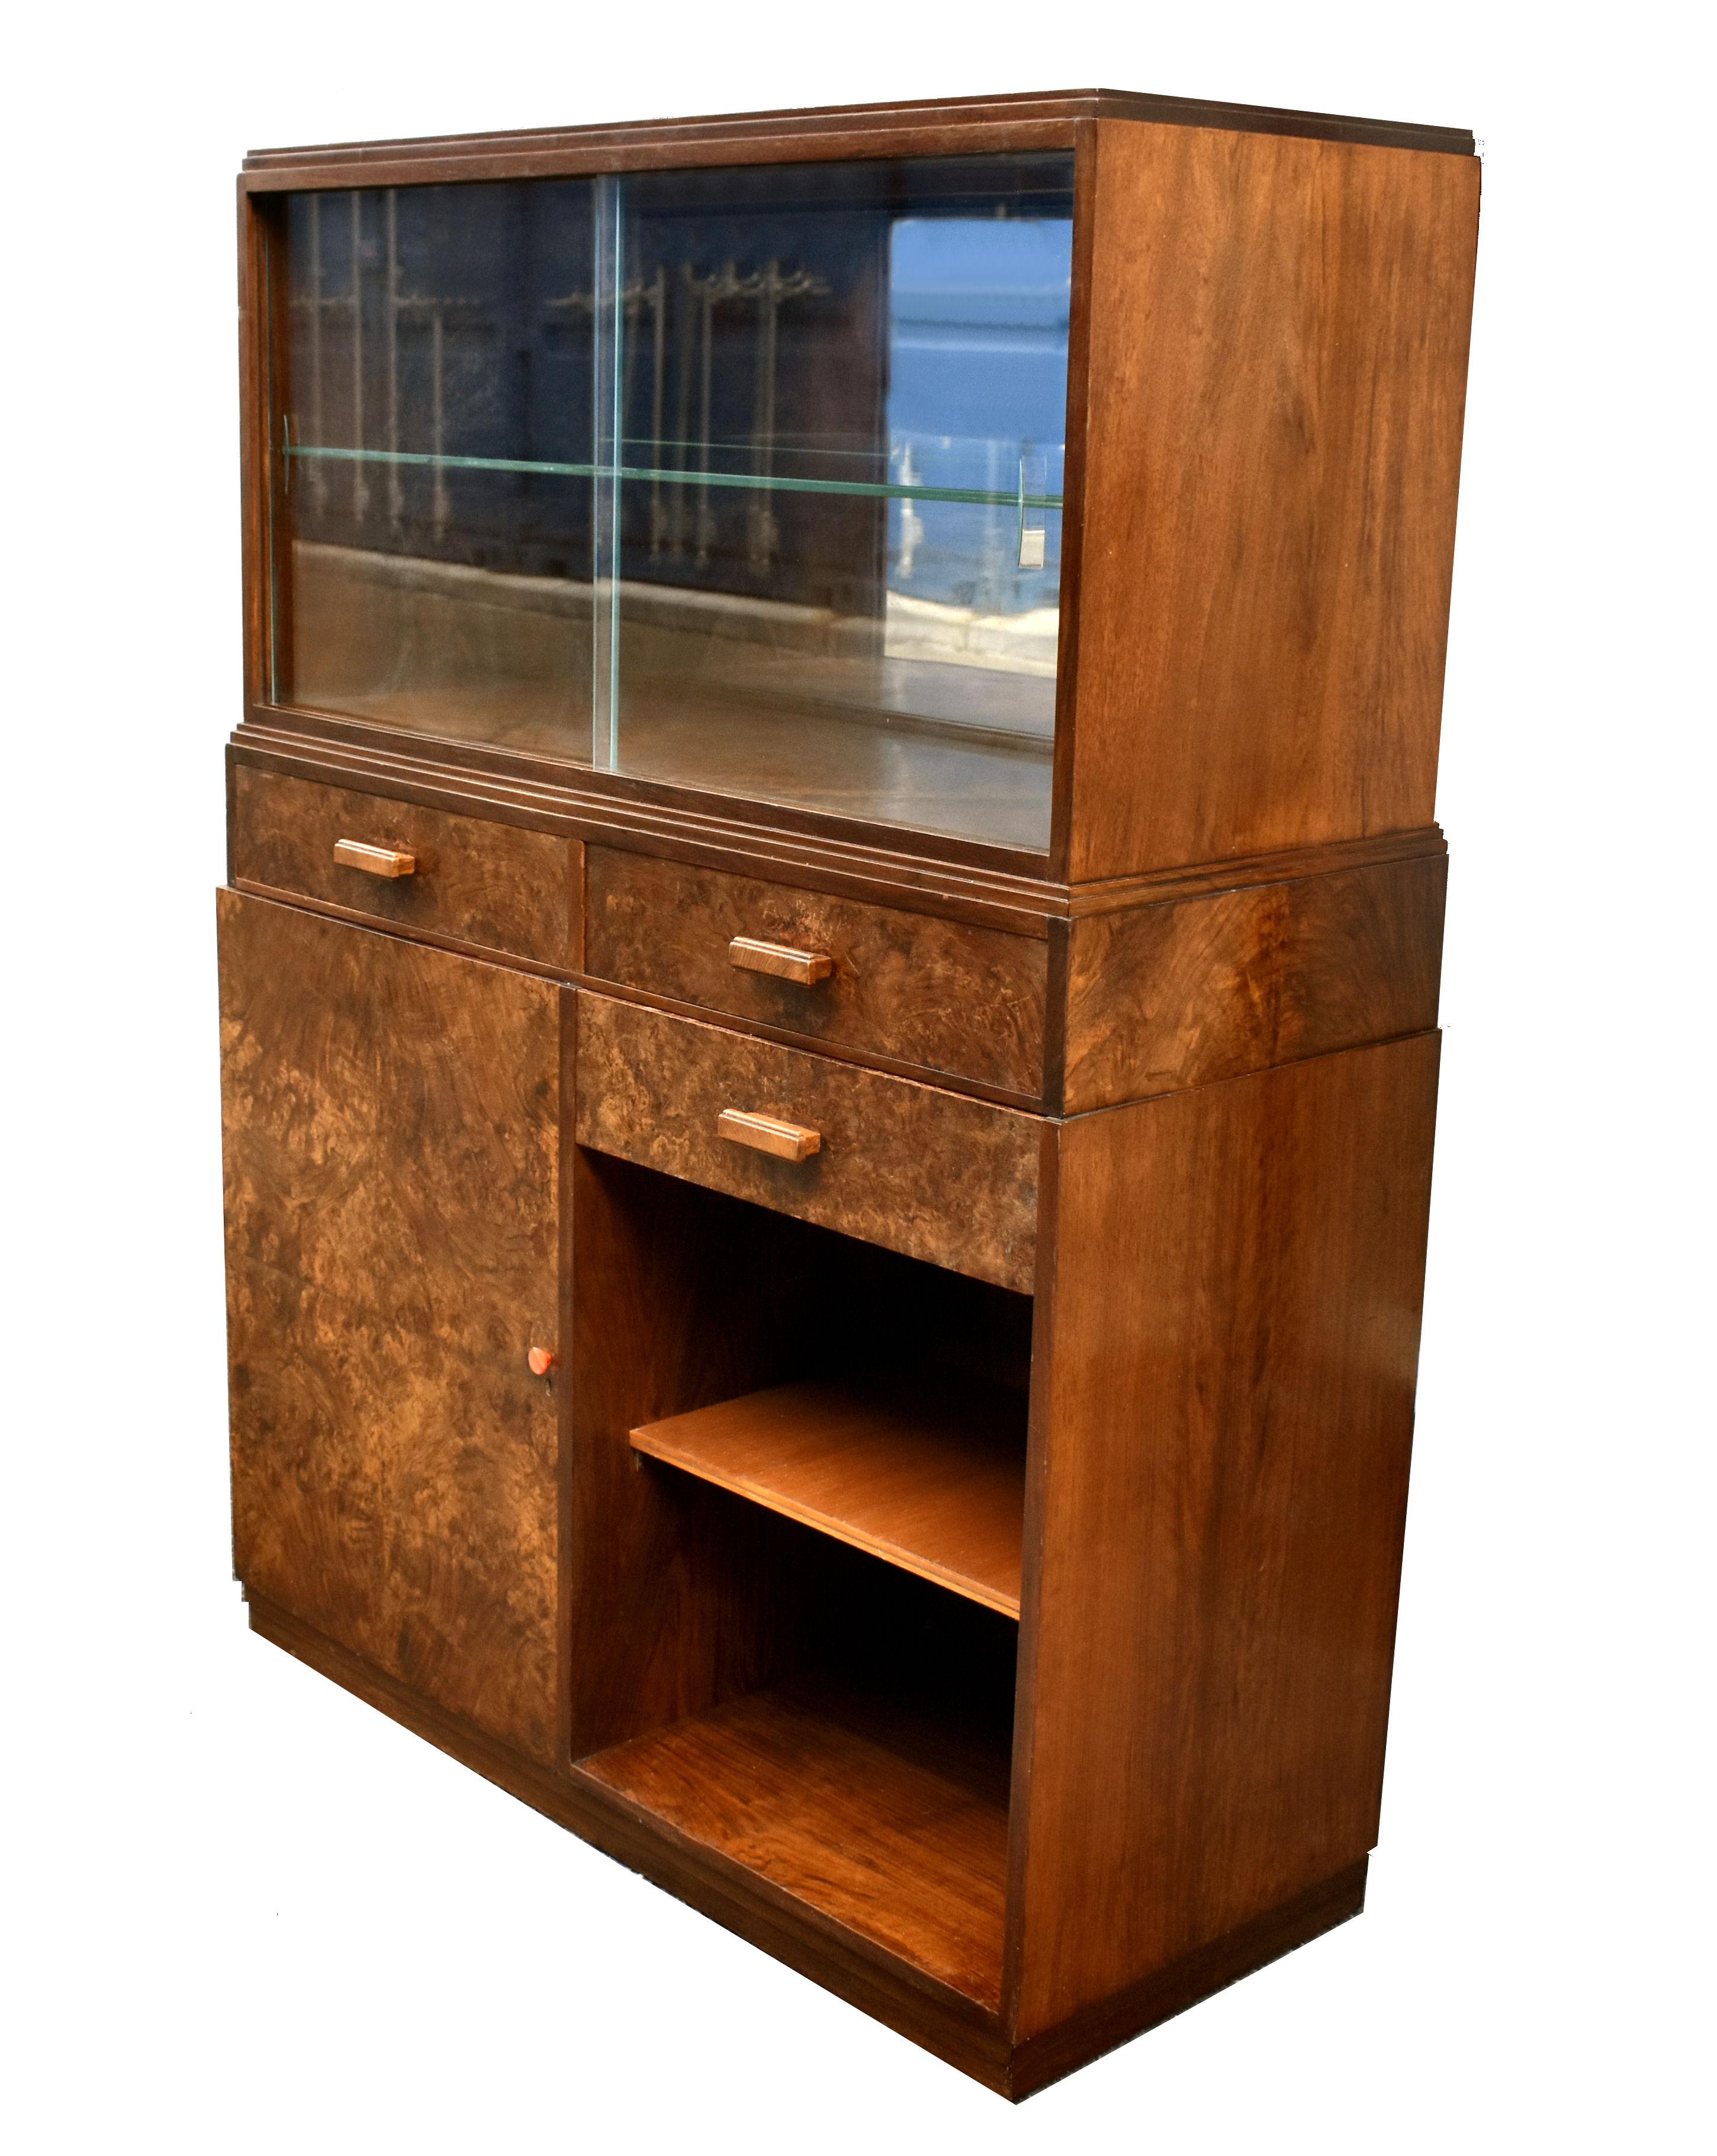 Nous vous présentons ce meuble à boissons anglais Art déco des années 1930, d'une grande élégance. Un meuble fabuleux, non seulement attrayant, mais aussi très fonctionnel. La partie supérieure est dotée de deux portes coulissantes en verre